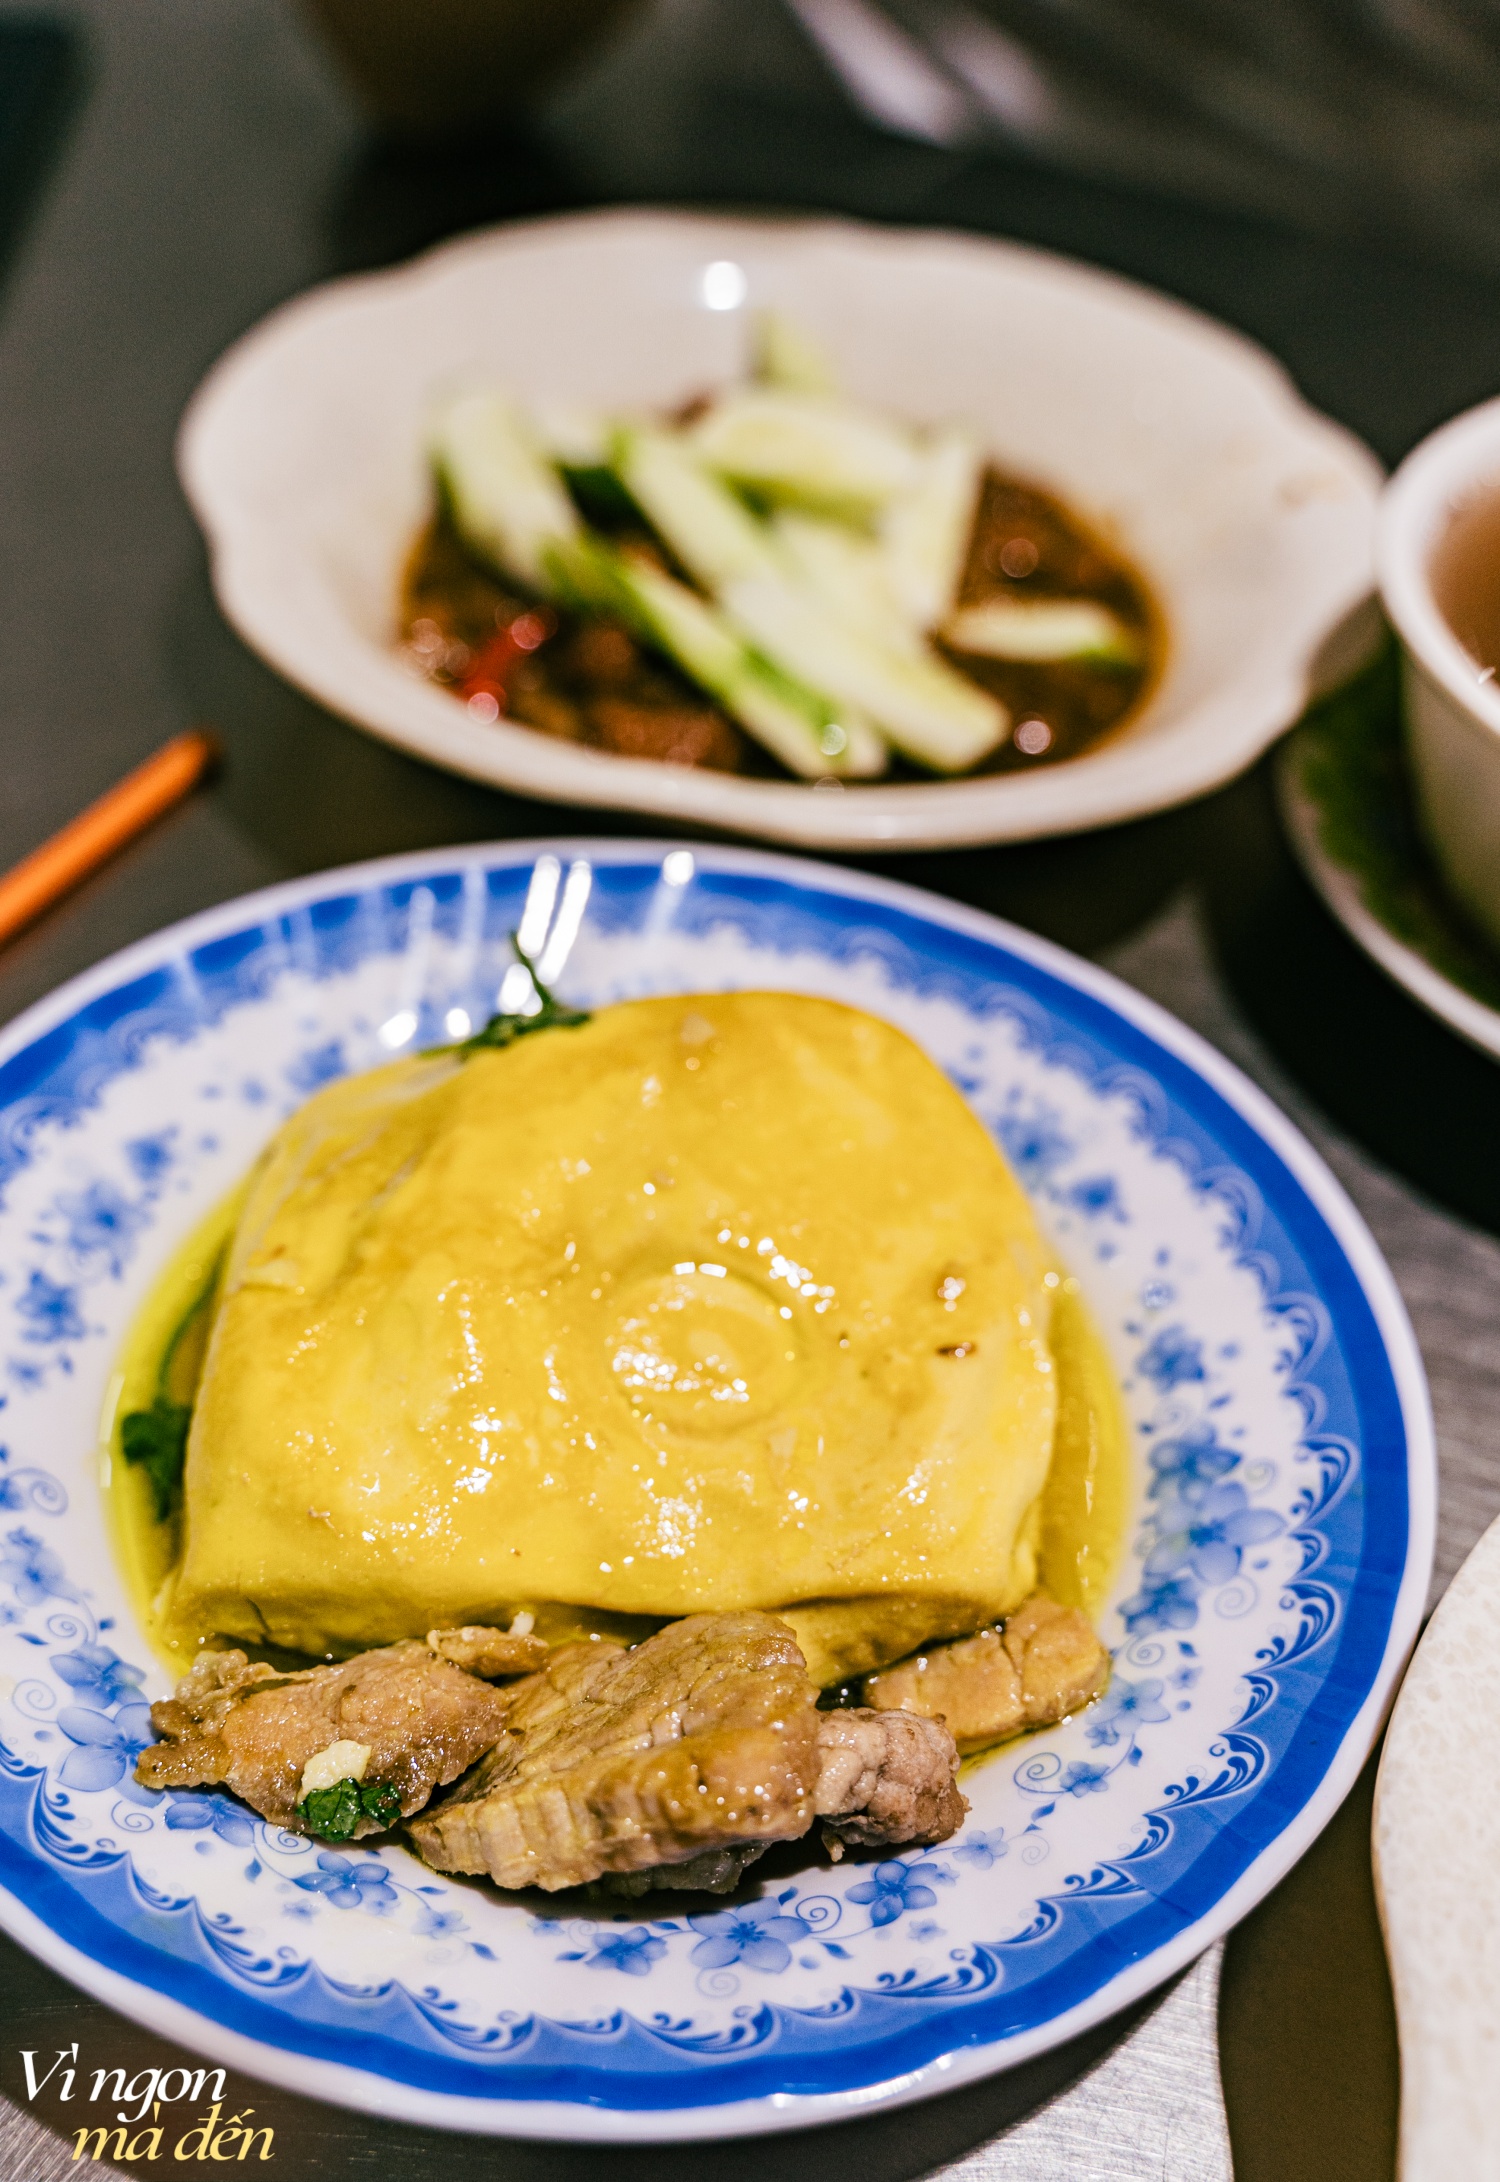 Đi ăn cơm bình dân kiểu người Hoa: Cửa tiệm bán 3 đời mỗi ngày nấu hơn 30 món cầu kỳ, đông khách đến nỗi không dám mở trên ứng dụng giao đồ ăn- Ảnh 7.